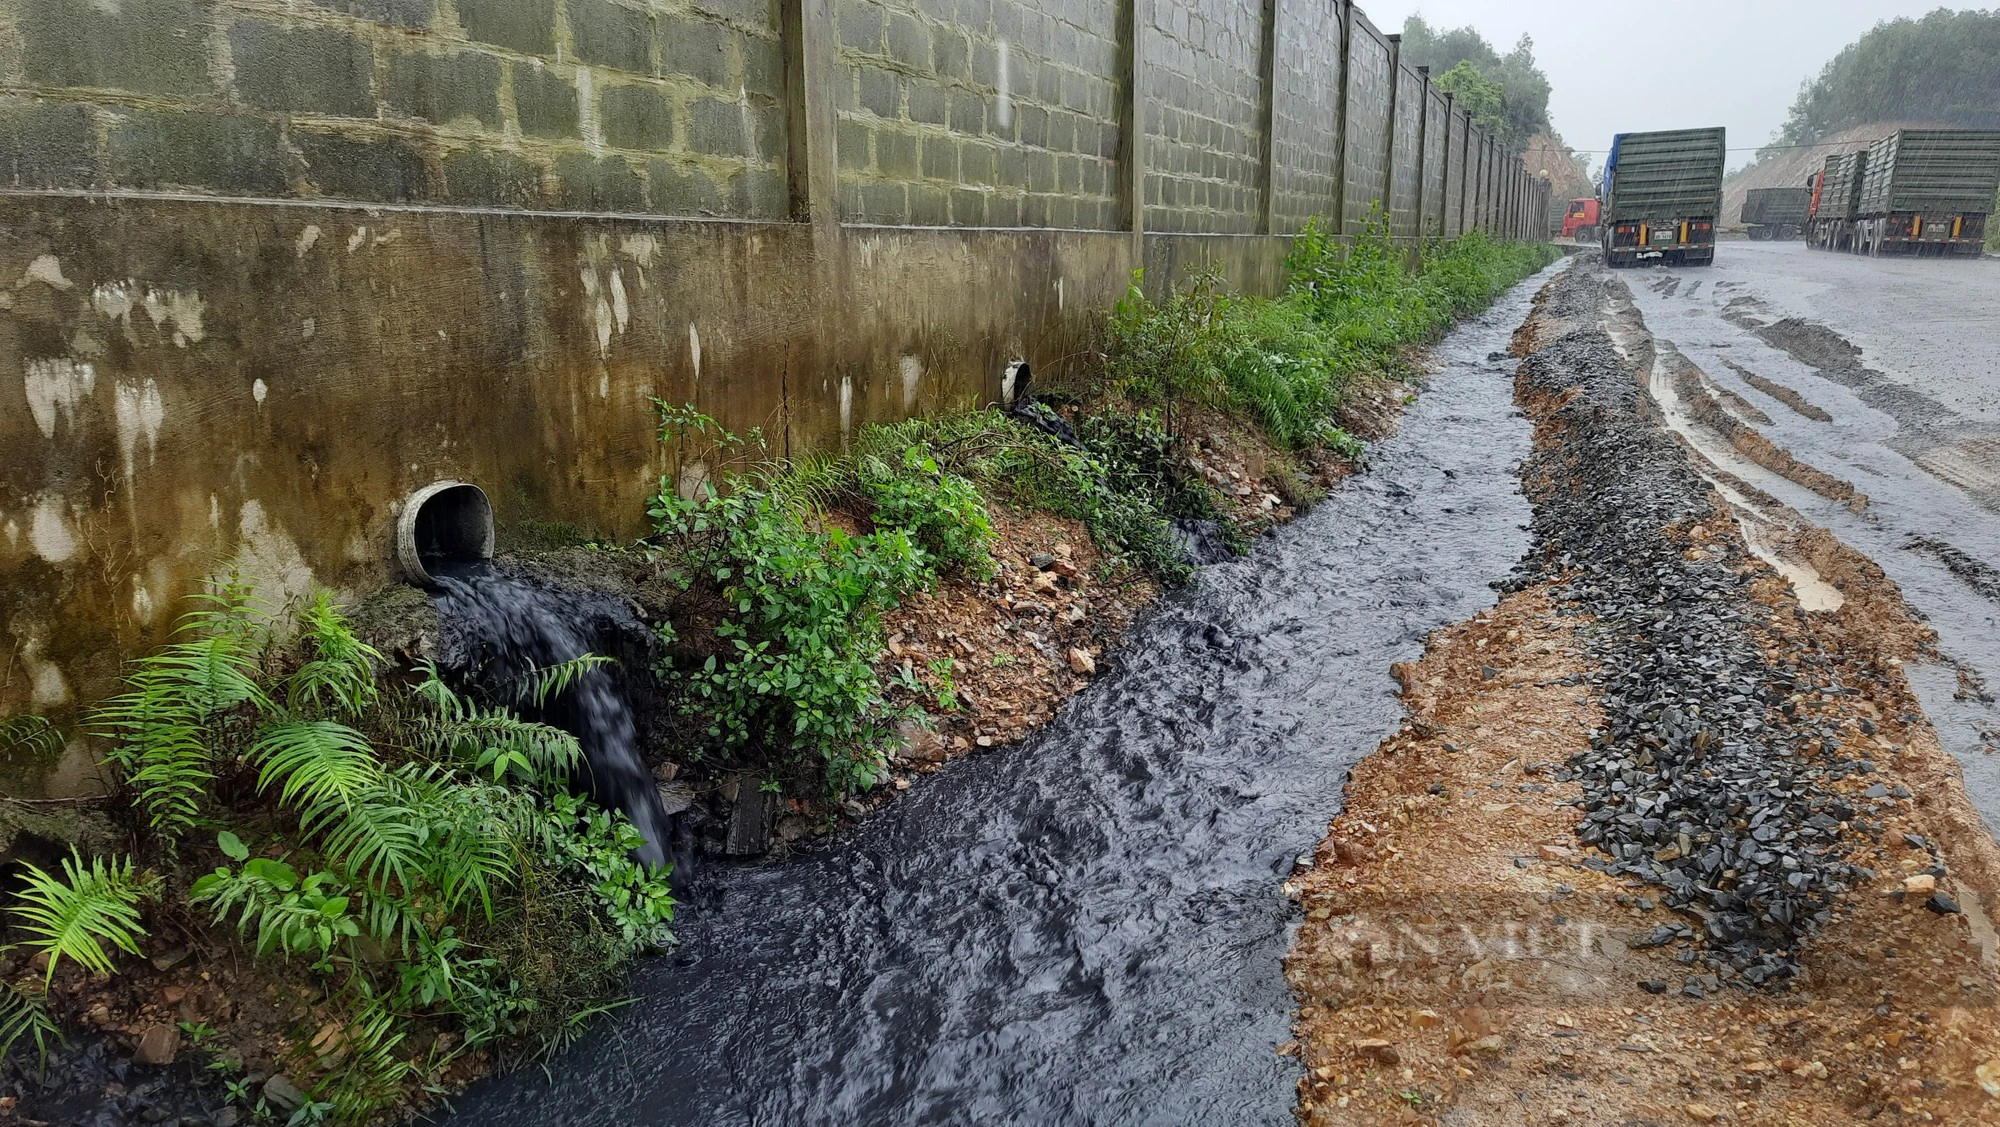 Mục sở thị “Thác nước đen” xả thải ra môi trường ở Quảng Trị - Ảnh 1.